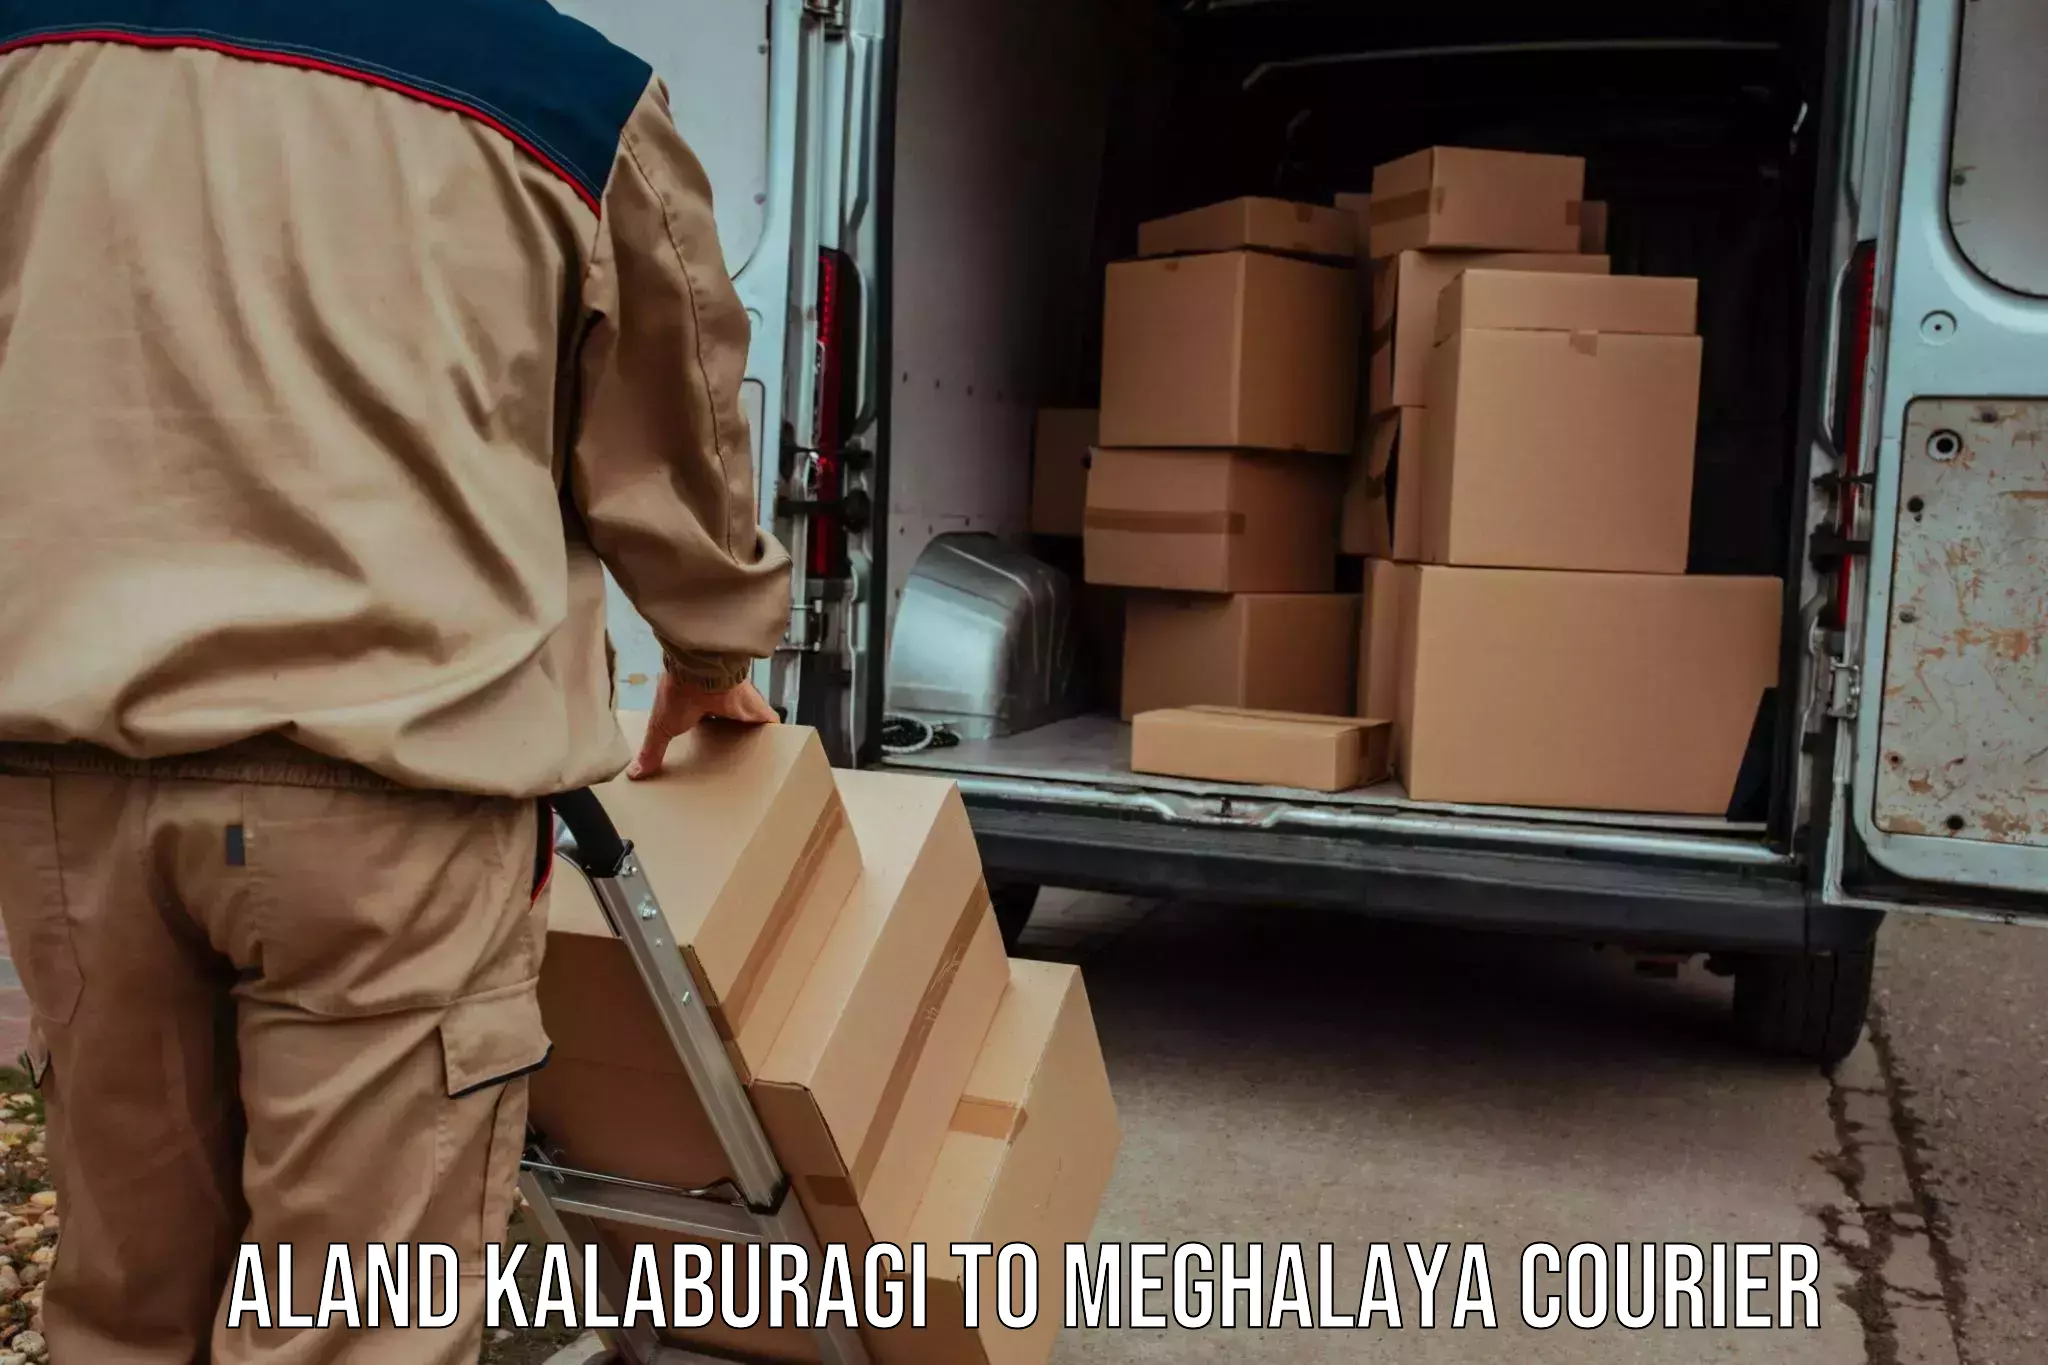 Premium courier solutions Aland Kalaburagi to NIT Meghalaya